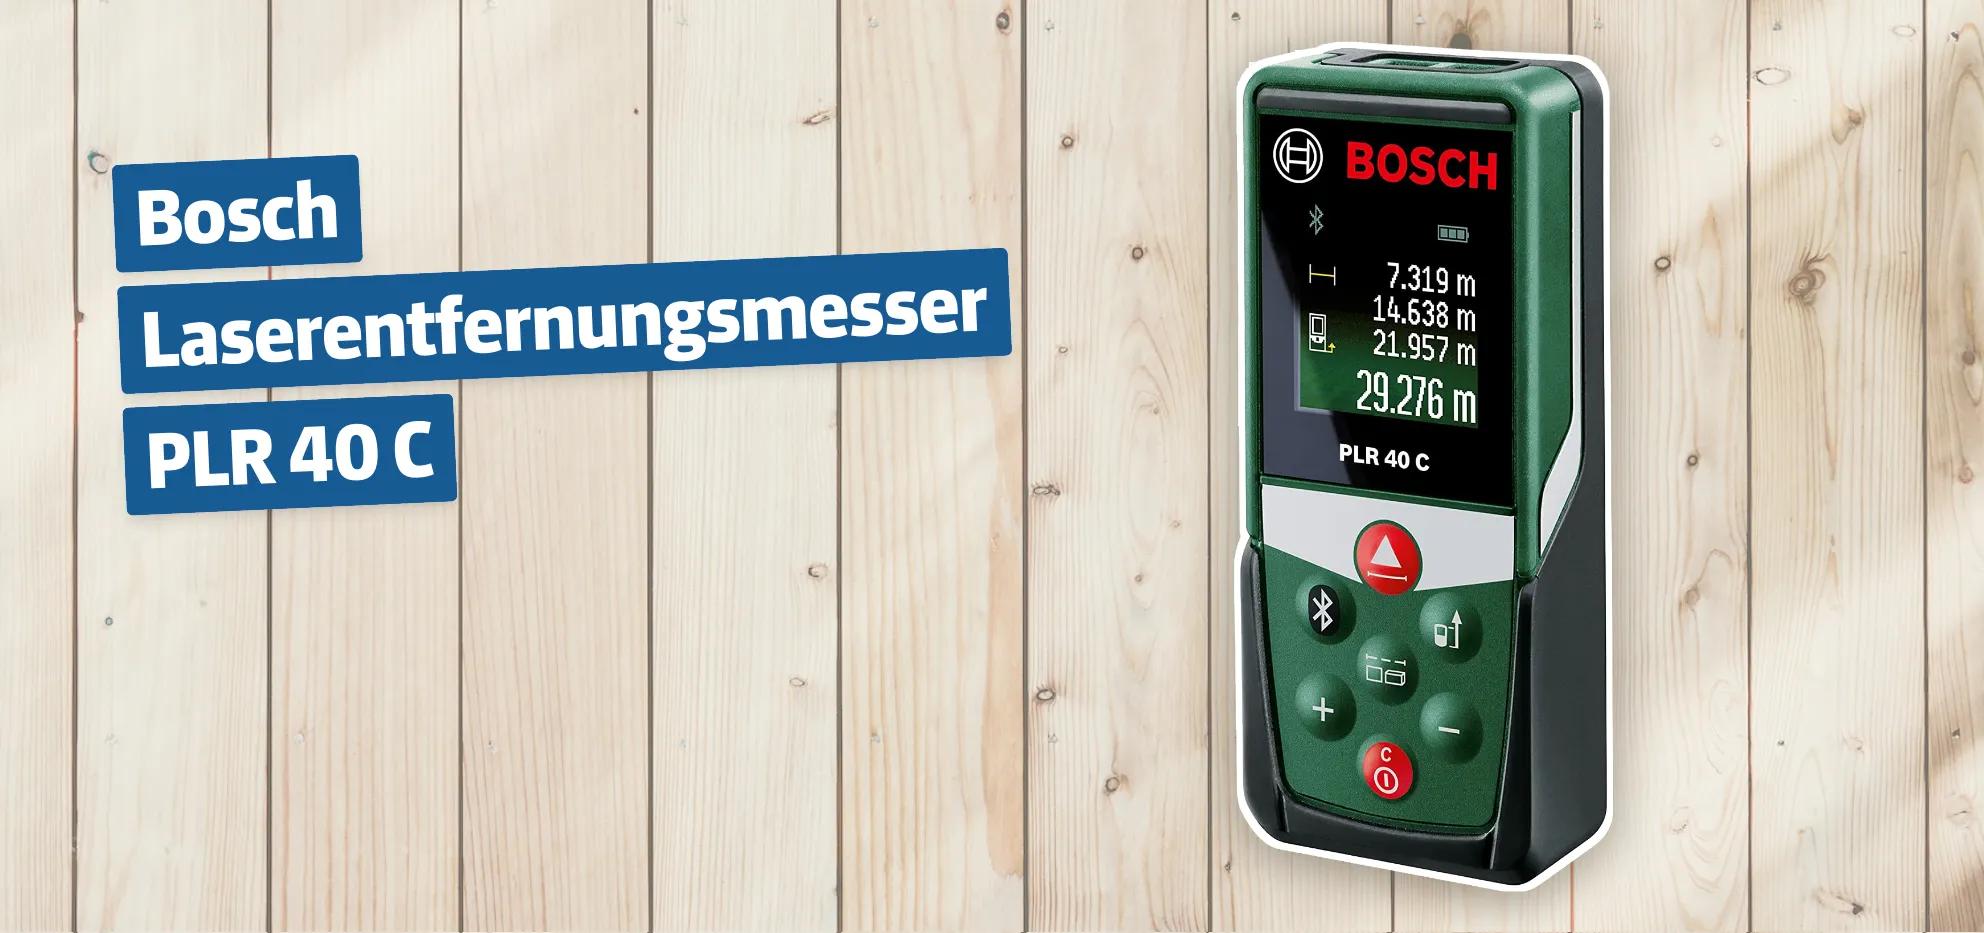 Bosch Laserentfernungsmesser PLR 40 C